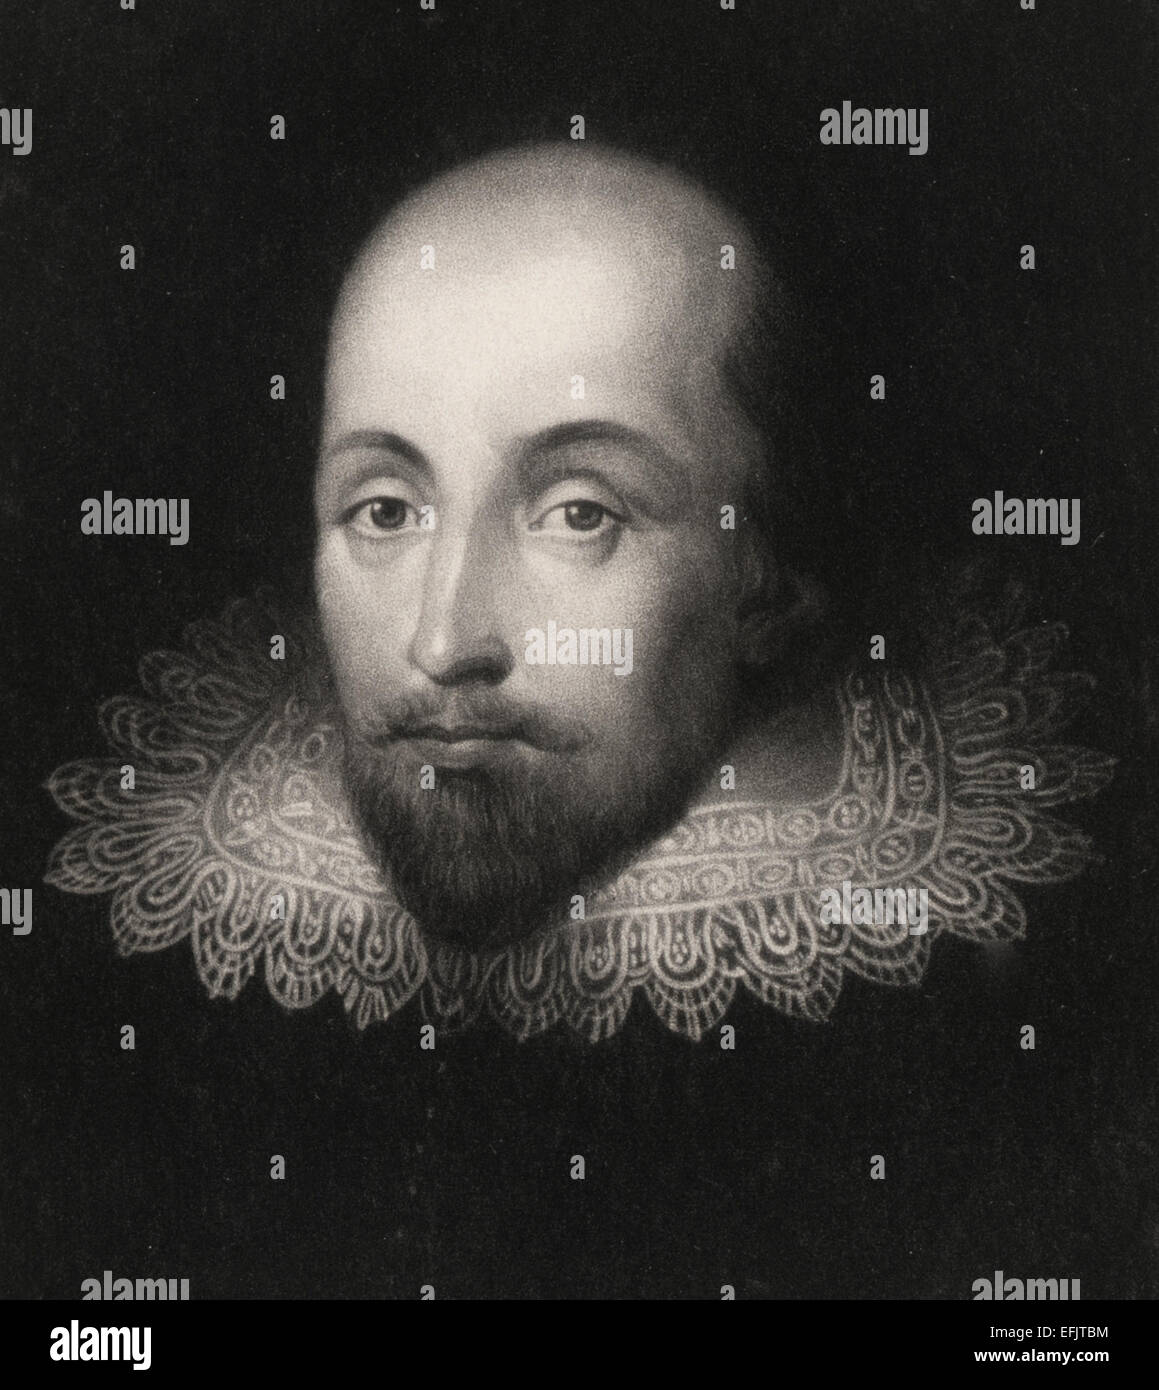 William Shakespeare, busto ritratto con collare in pizzo, rivolto verso la parte anteriore. Foto Stock